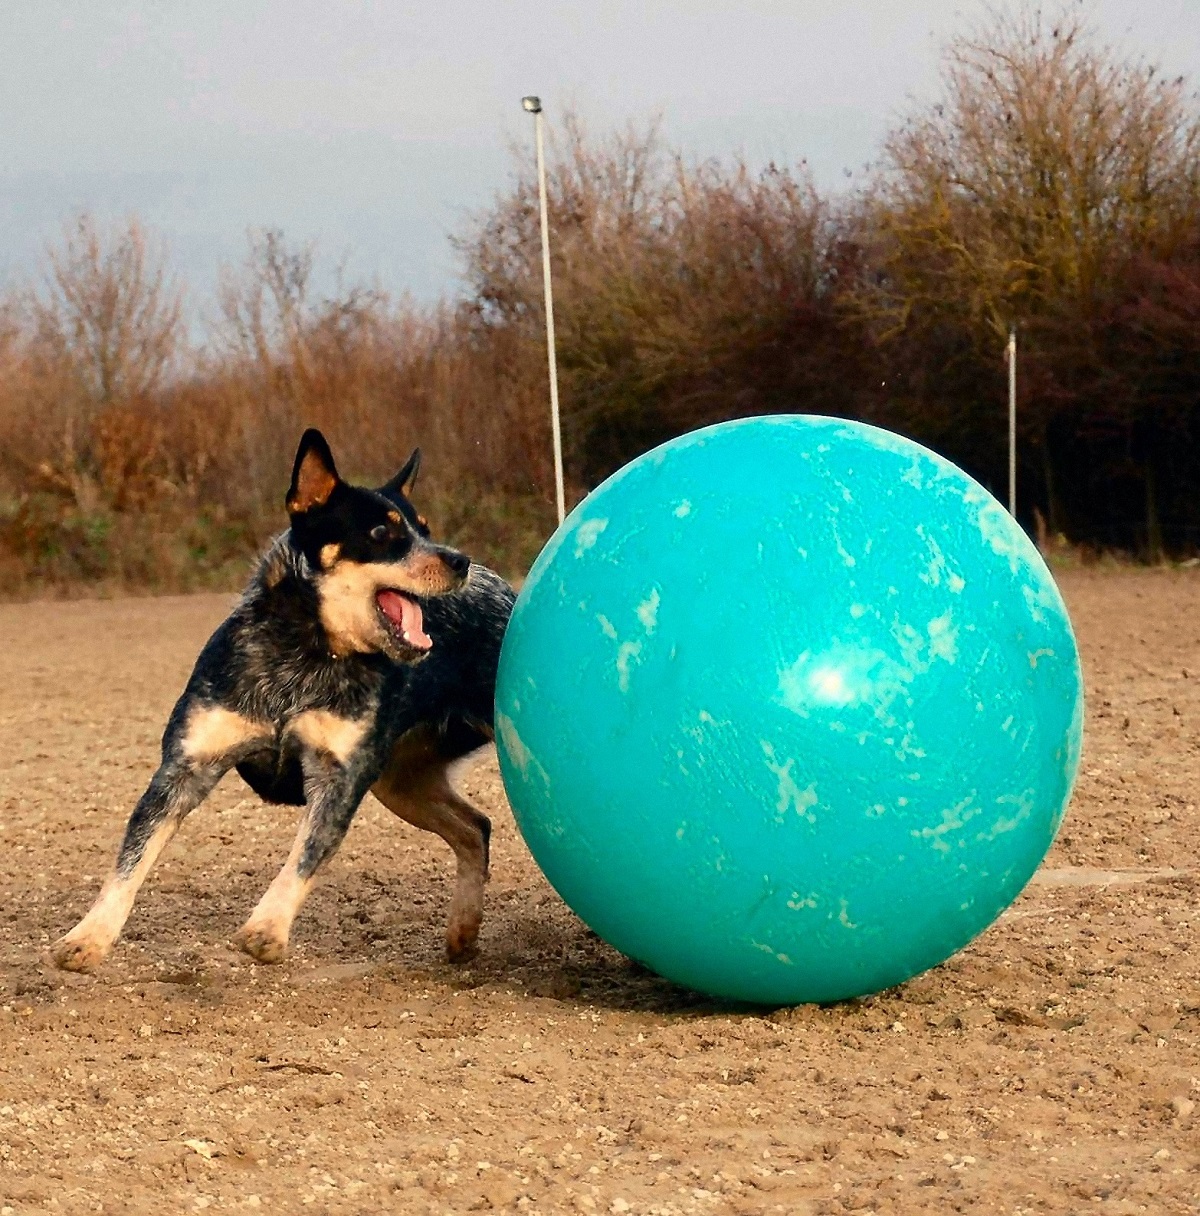 Câine de bovine australian care se joacă cu o minge mare